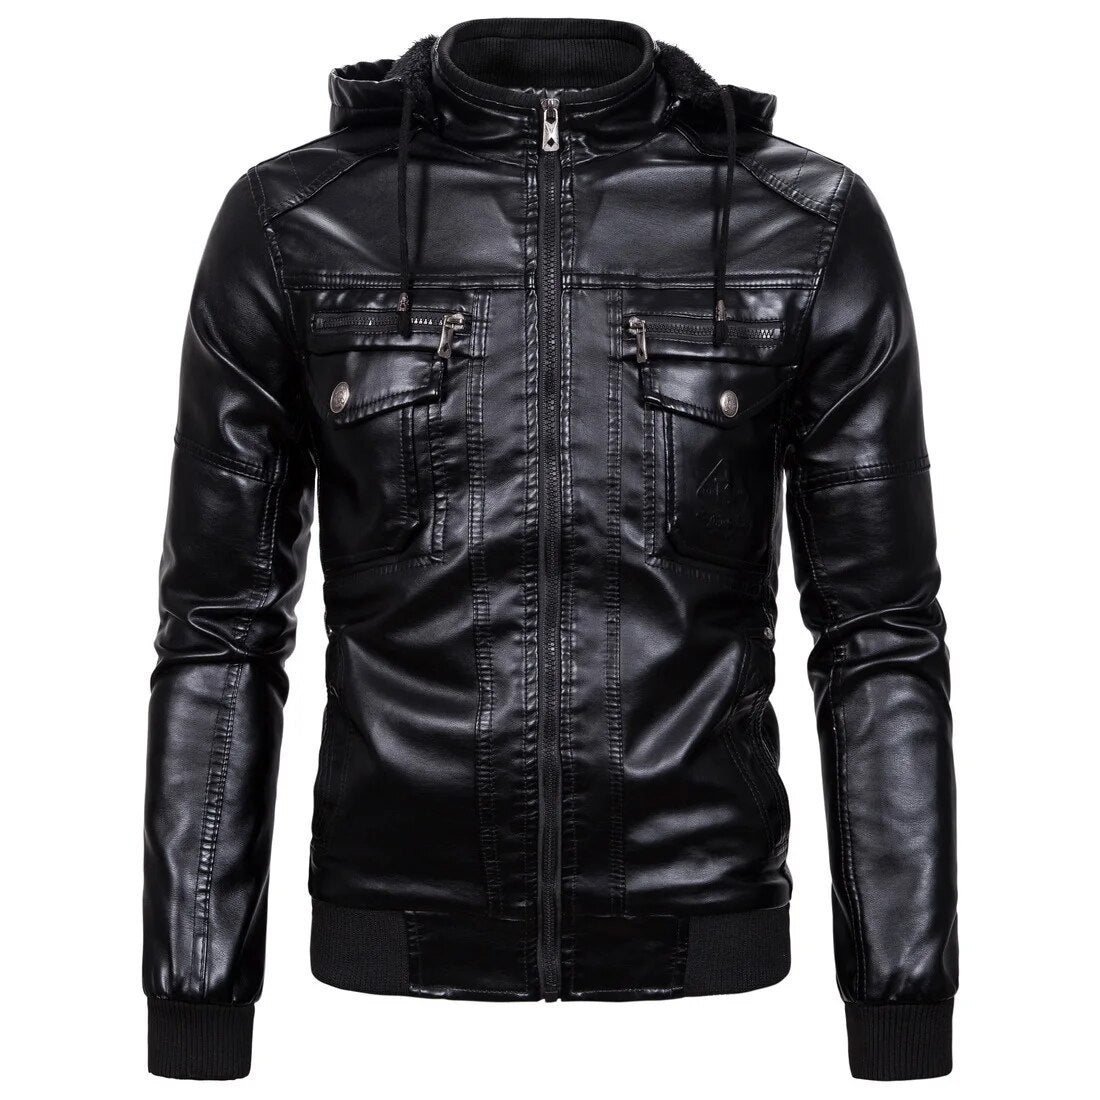 Winter Men's Leather Jackets Male Hooded Fleece Coat EUR Size Streetwear PU Casual Biker Jackets Men Motorcycle Jacket AS1603